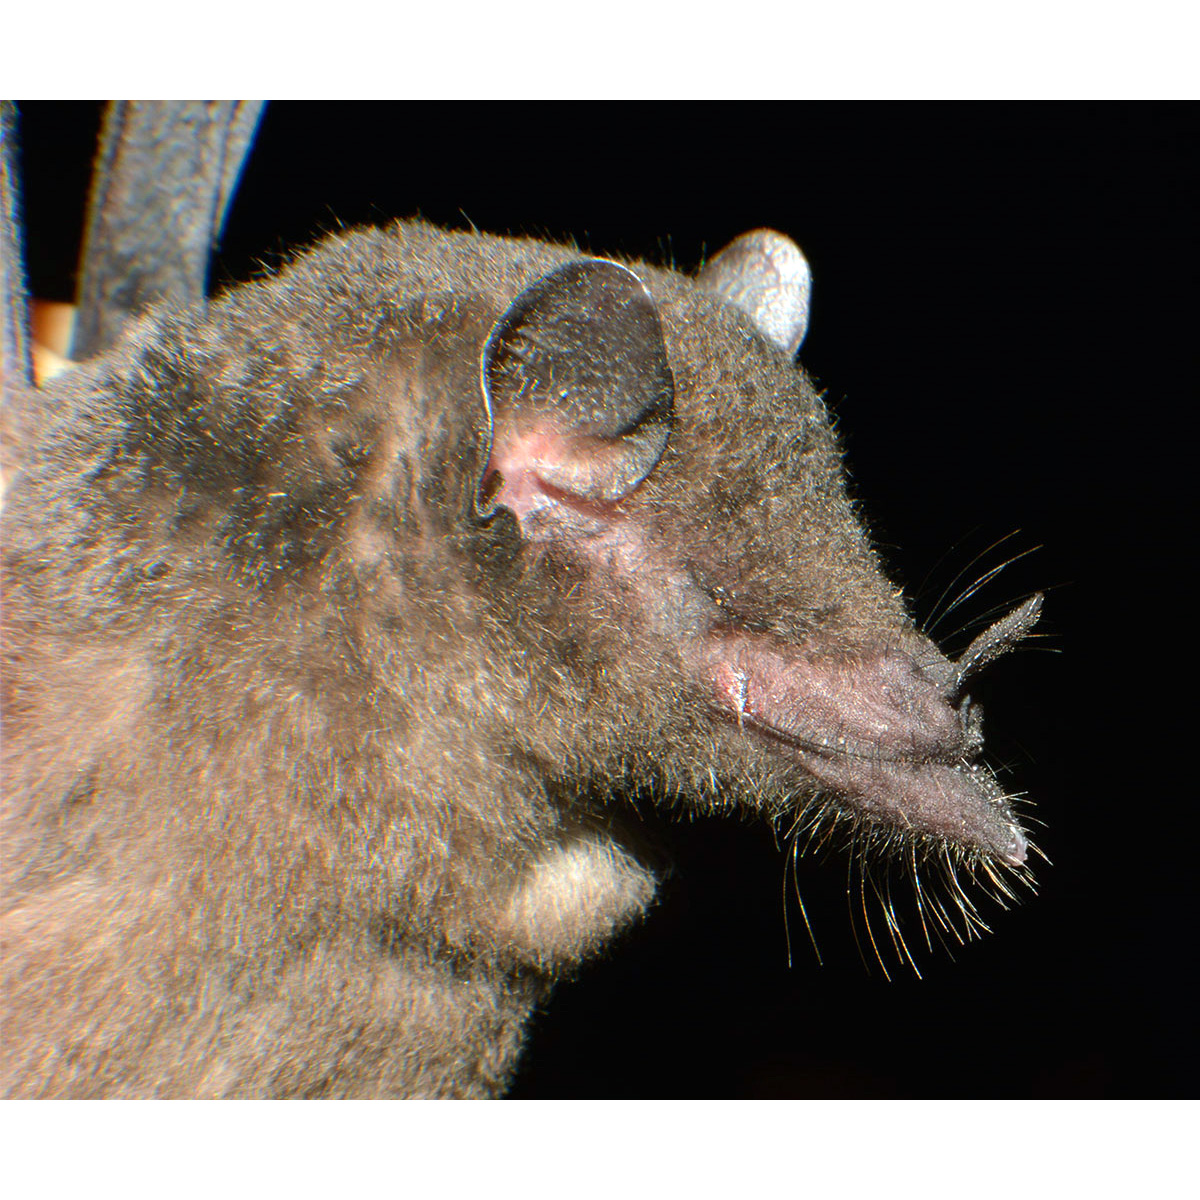 Tube-lipped Nectar Bat (Anoura fistulata) Фото №7